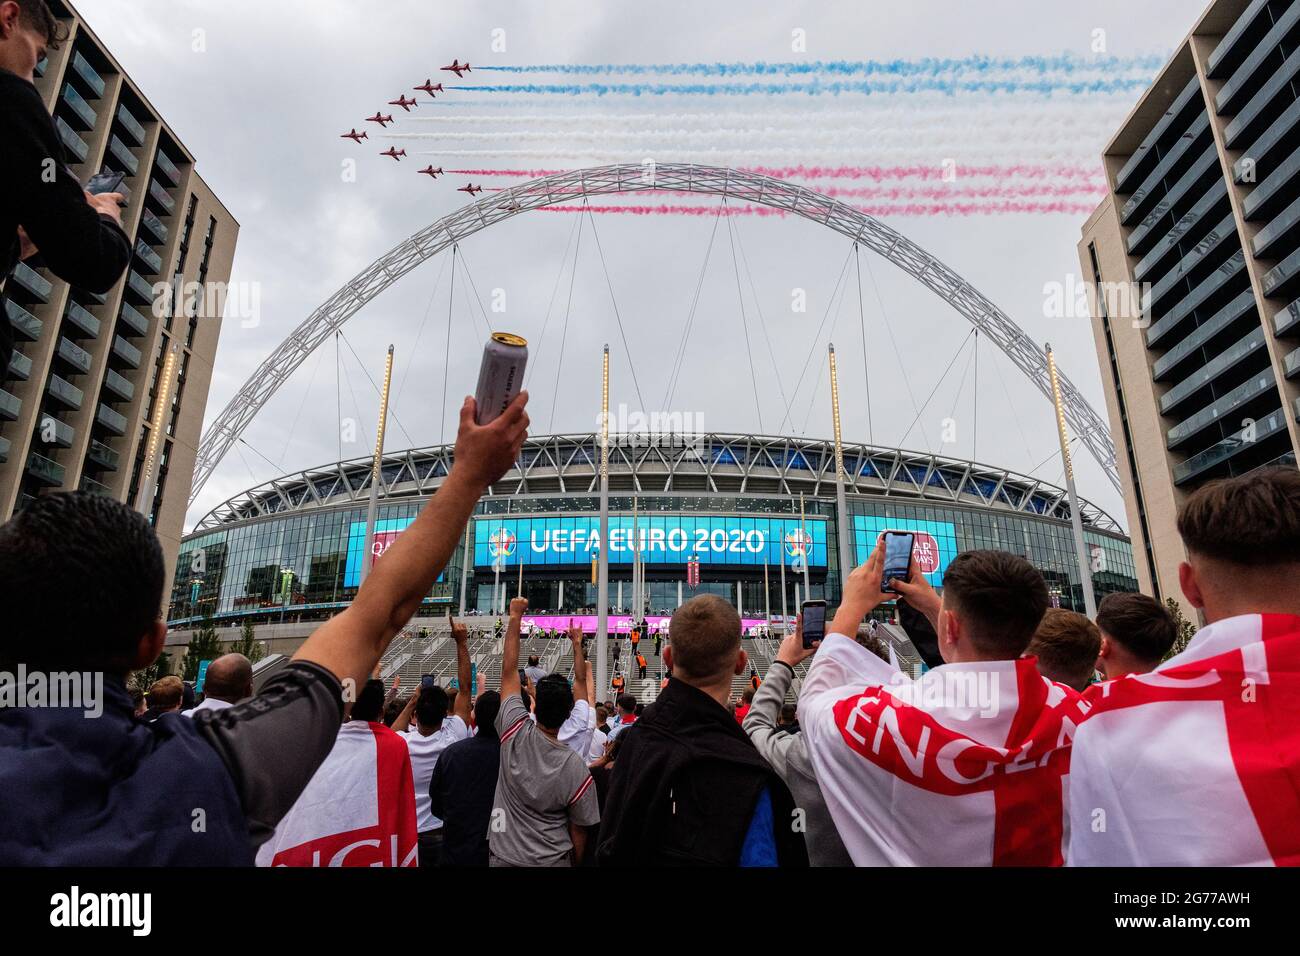 Londres, Royaume-Uni. 11 juillet 2021. Des flèches rouges survolant le stade de Wembley avant le match Italie contre Angleterre de la finale de l'Euro 2020. Crédit: Joao Daniel Pereira crédit: João Daniel Pereira/Alay Live News Banque D'Images